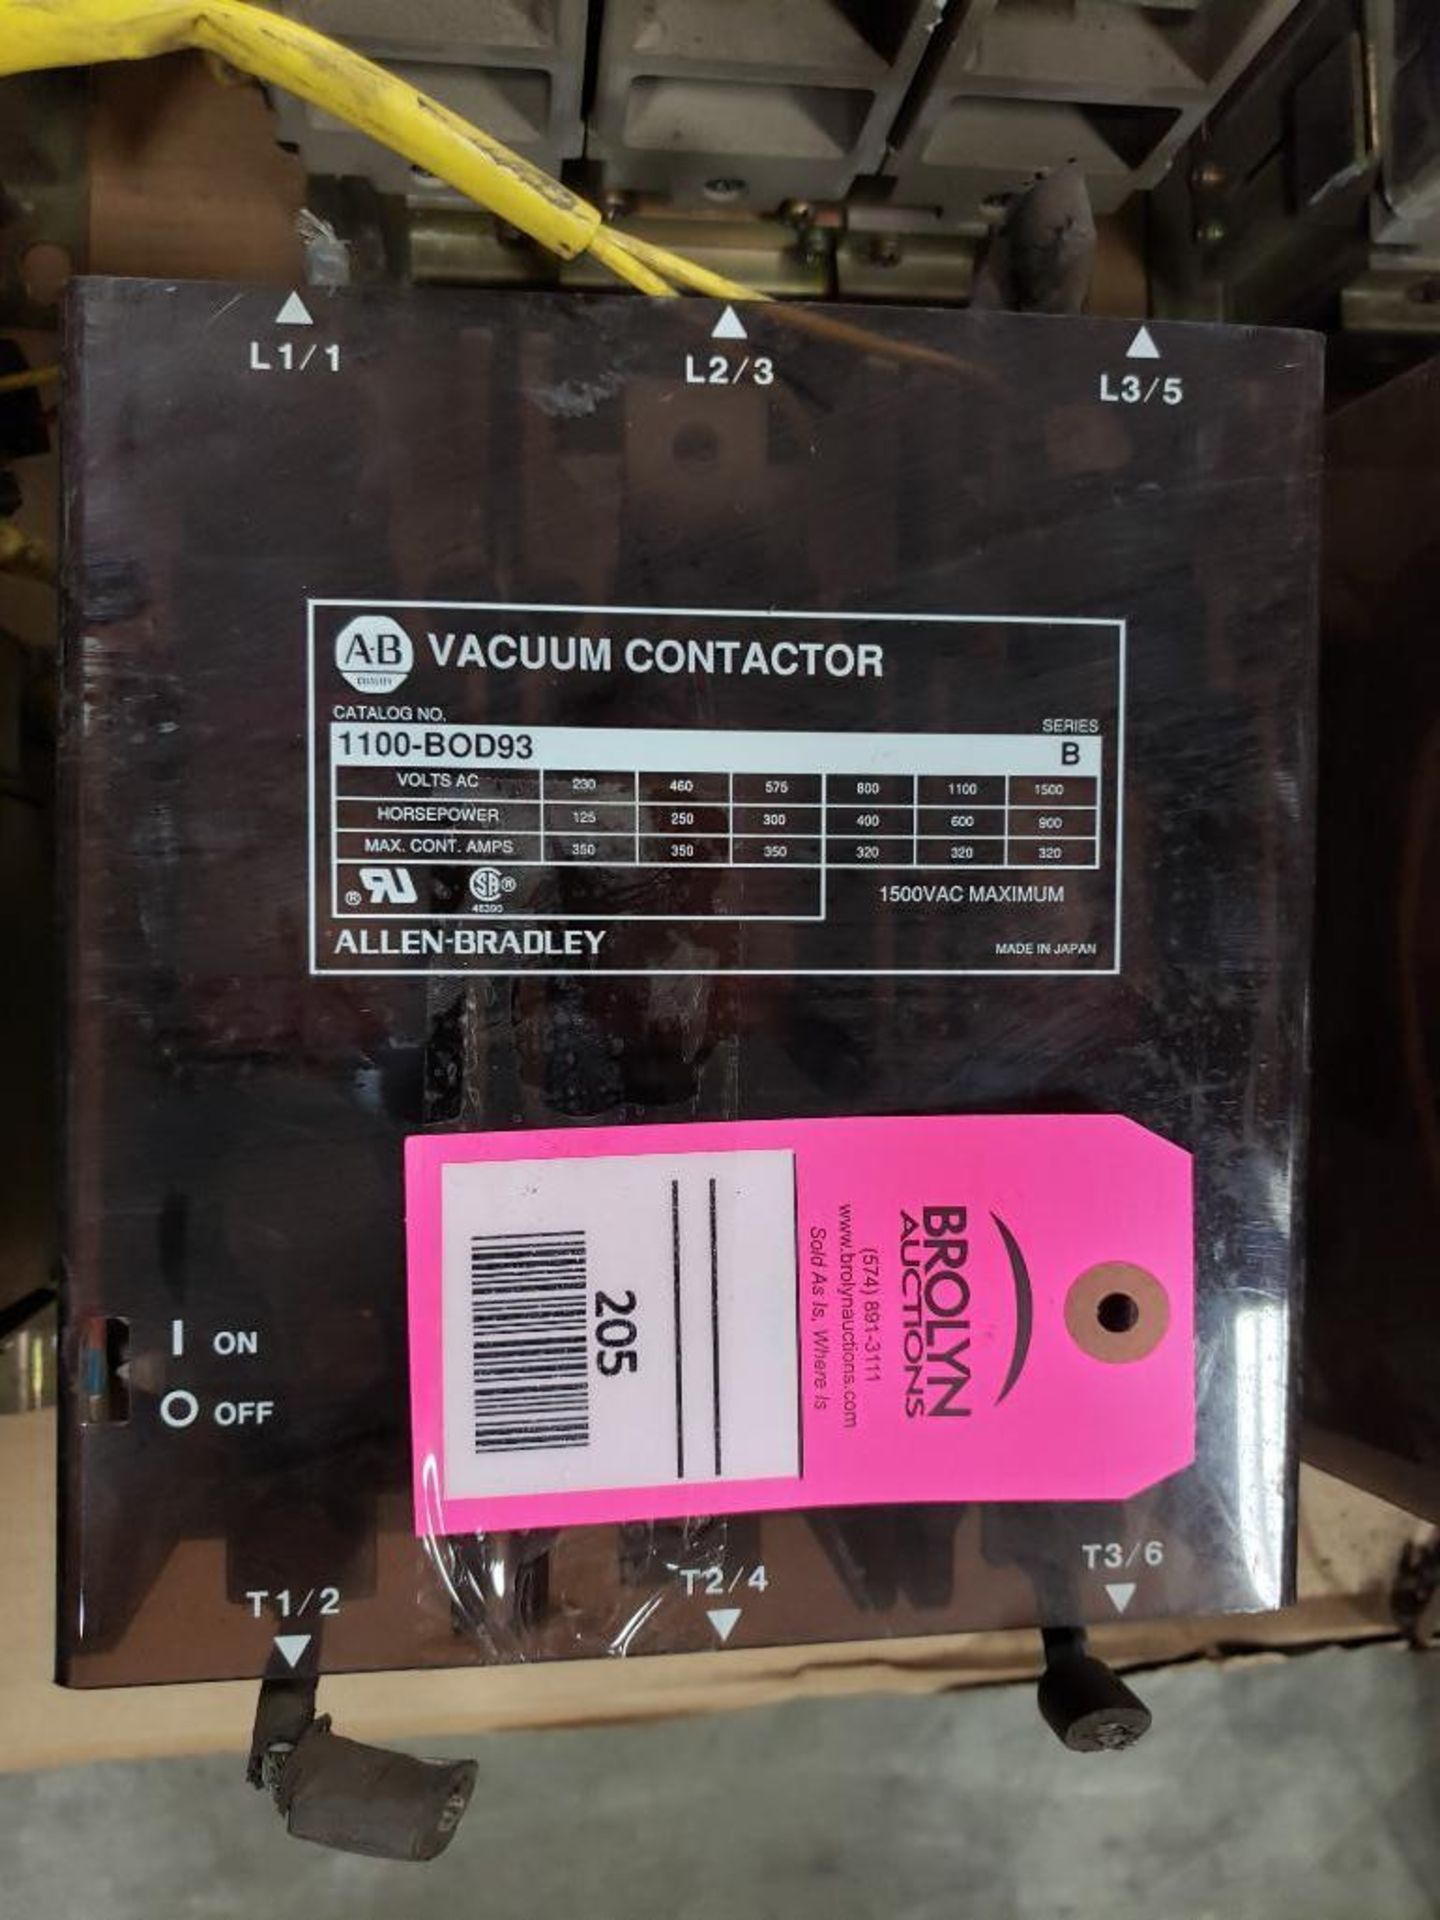 Allen Bradley vacuum contactor 1100-BOD93.